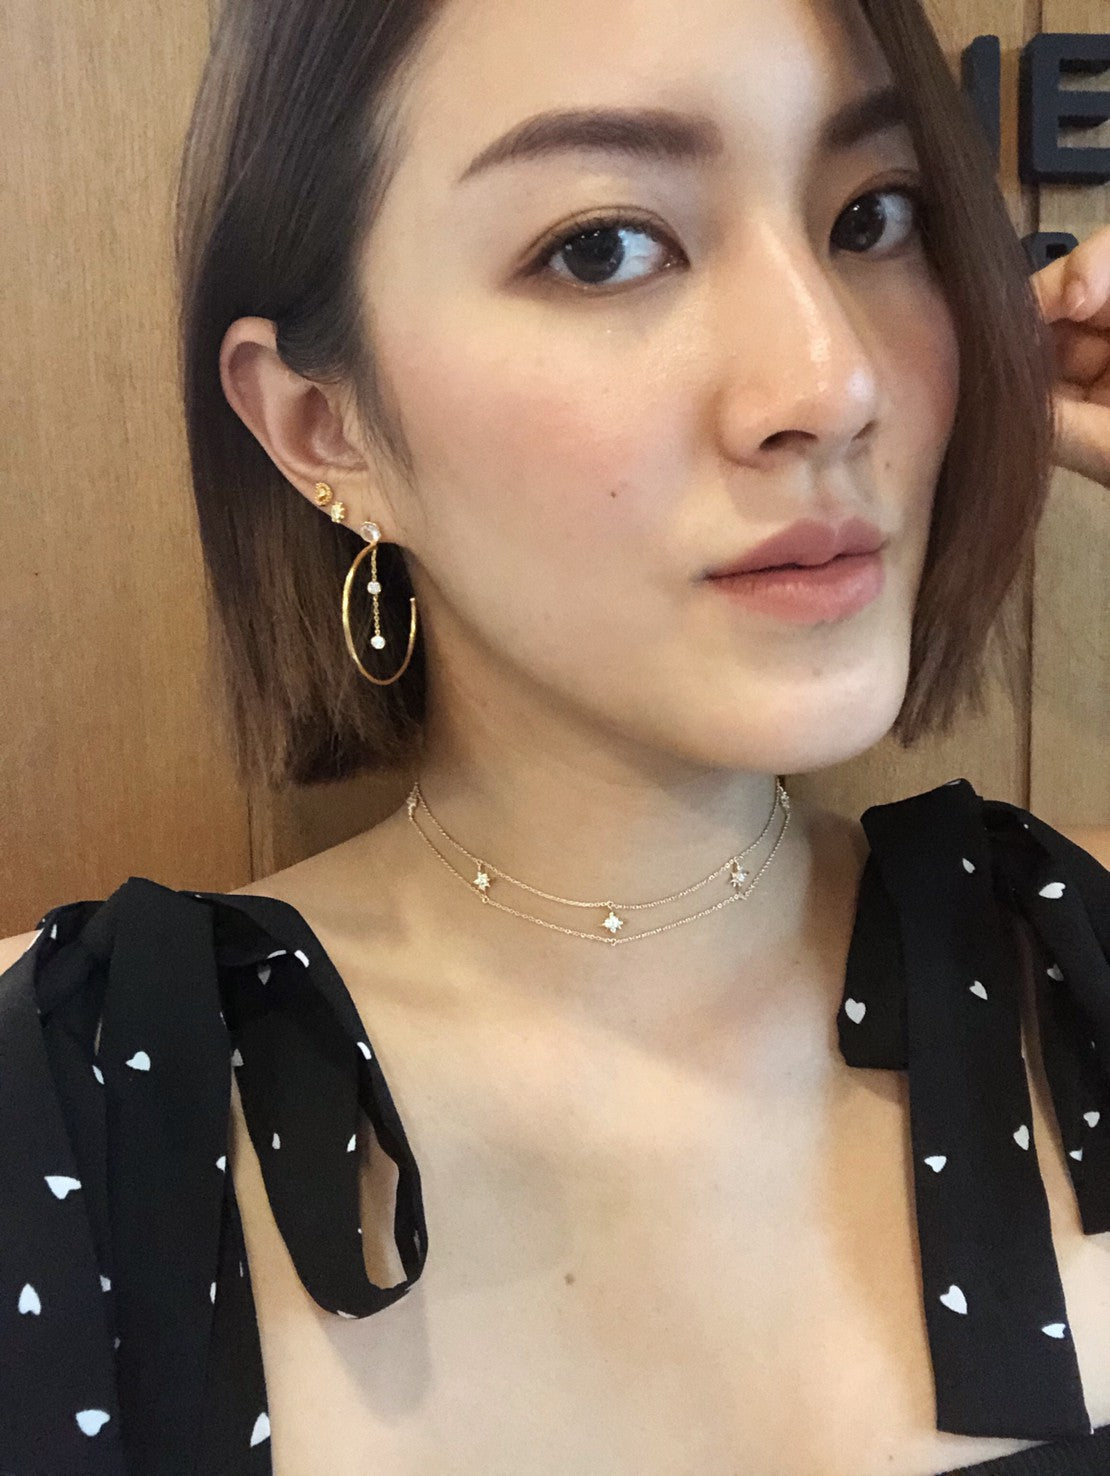 Diona Hoop Earrings - Silver